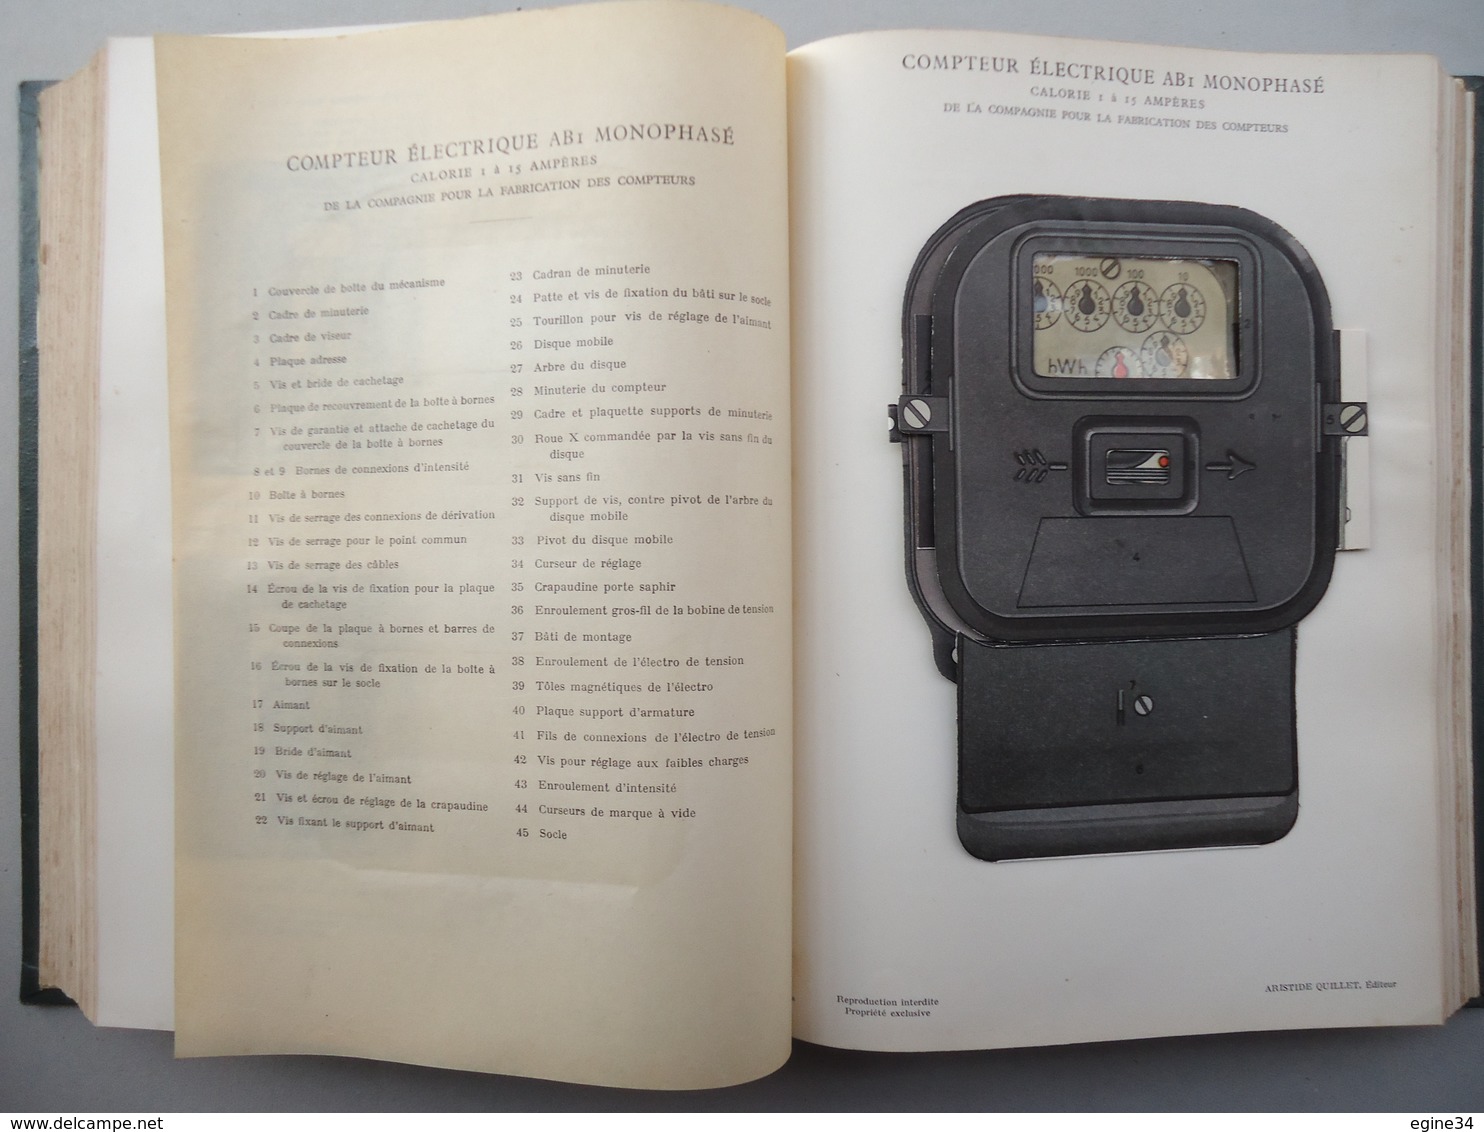 Librairie Aristide Quillet - Henri Desarces - Nouvelle Encyclopédie Pratique d'Electricité - 1939 -